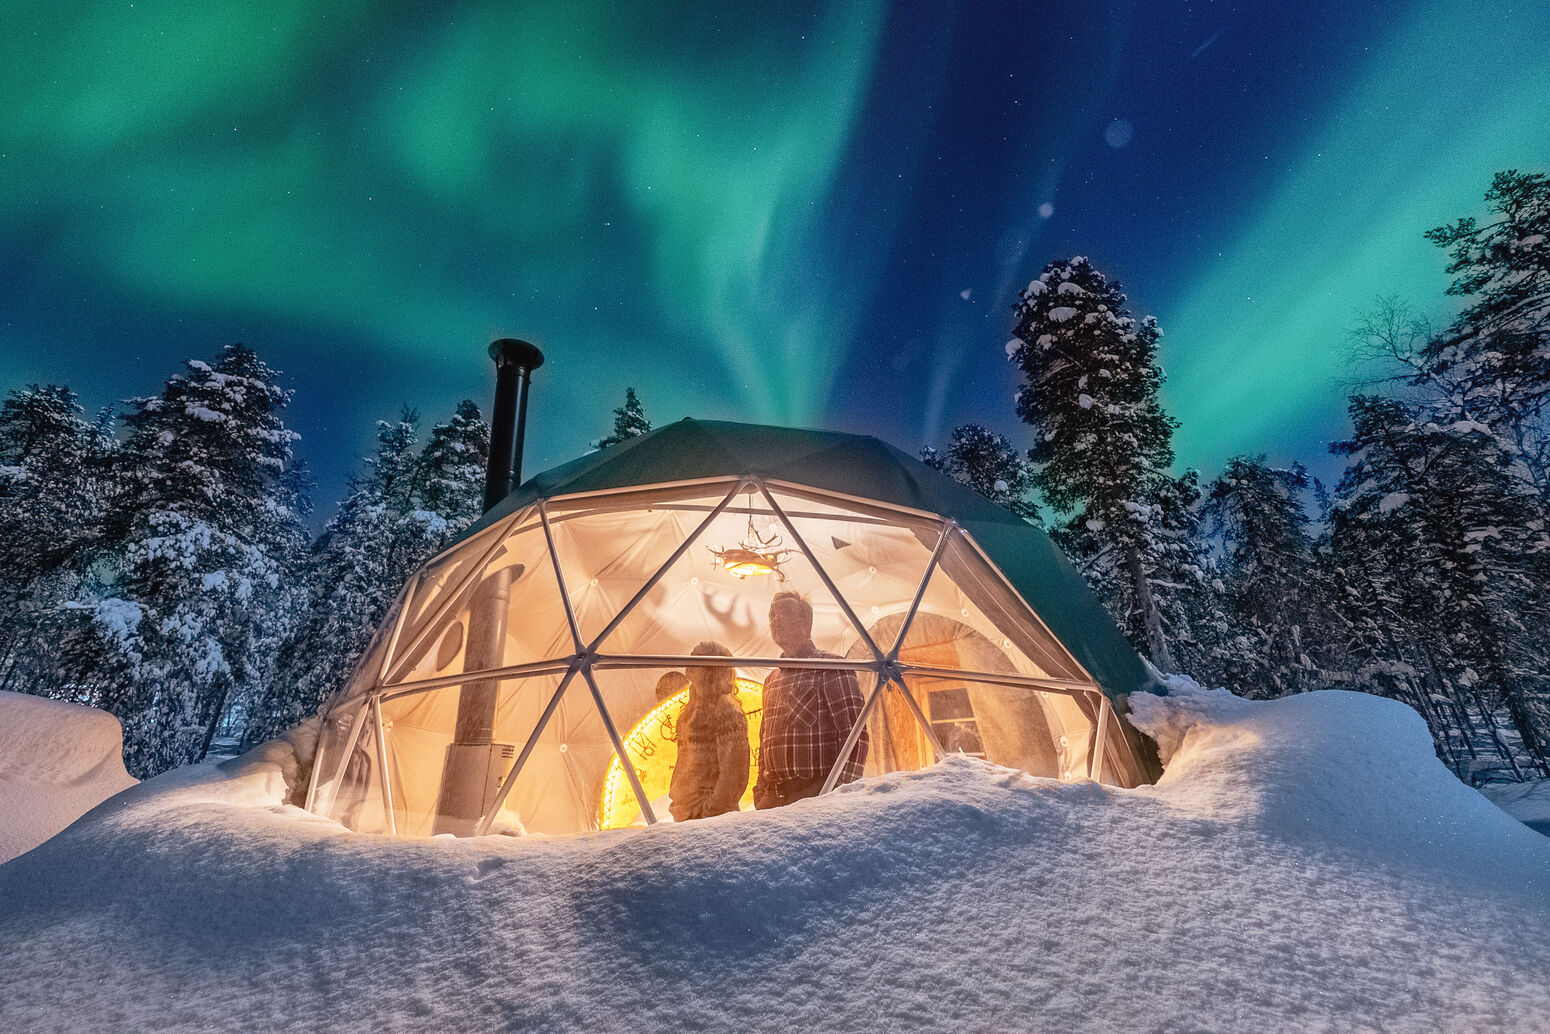 antti pietikäinen, aurora borealis, aurora borealis 2020, harriniva, hotel jeris, jeris dome, winter 2020